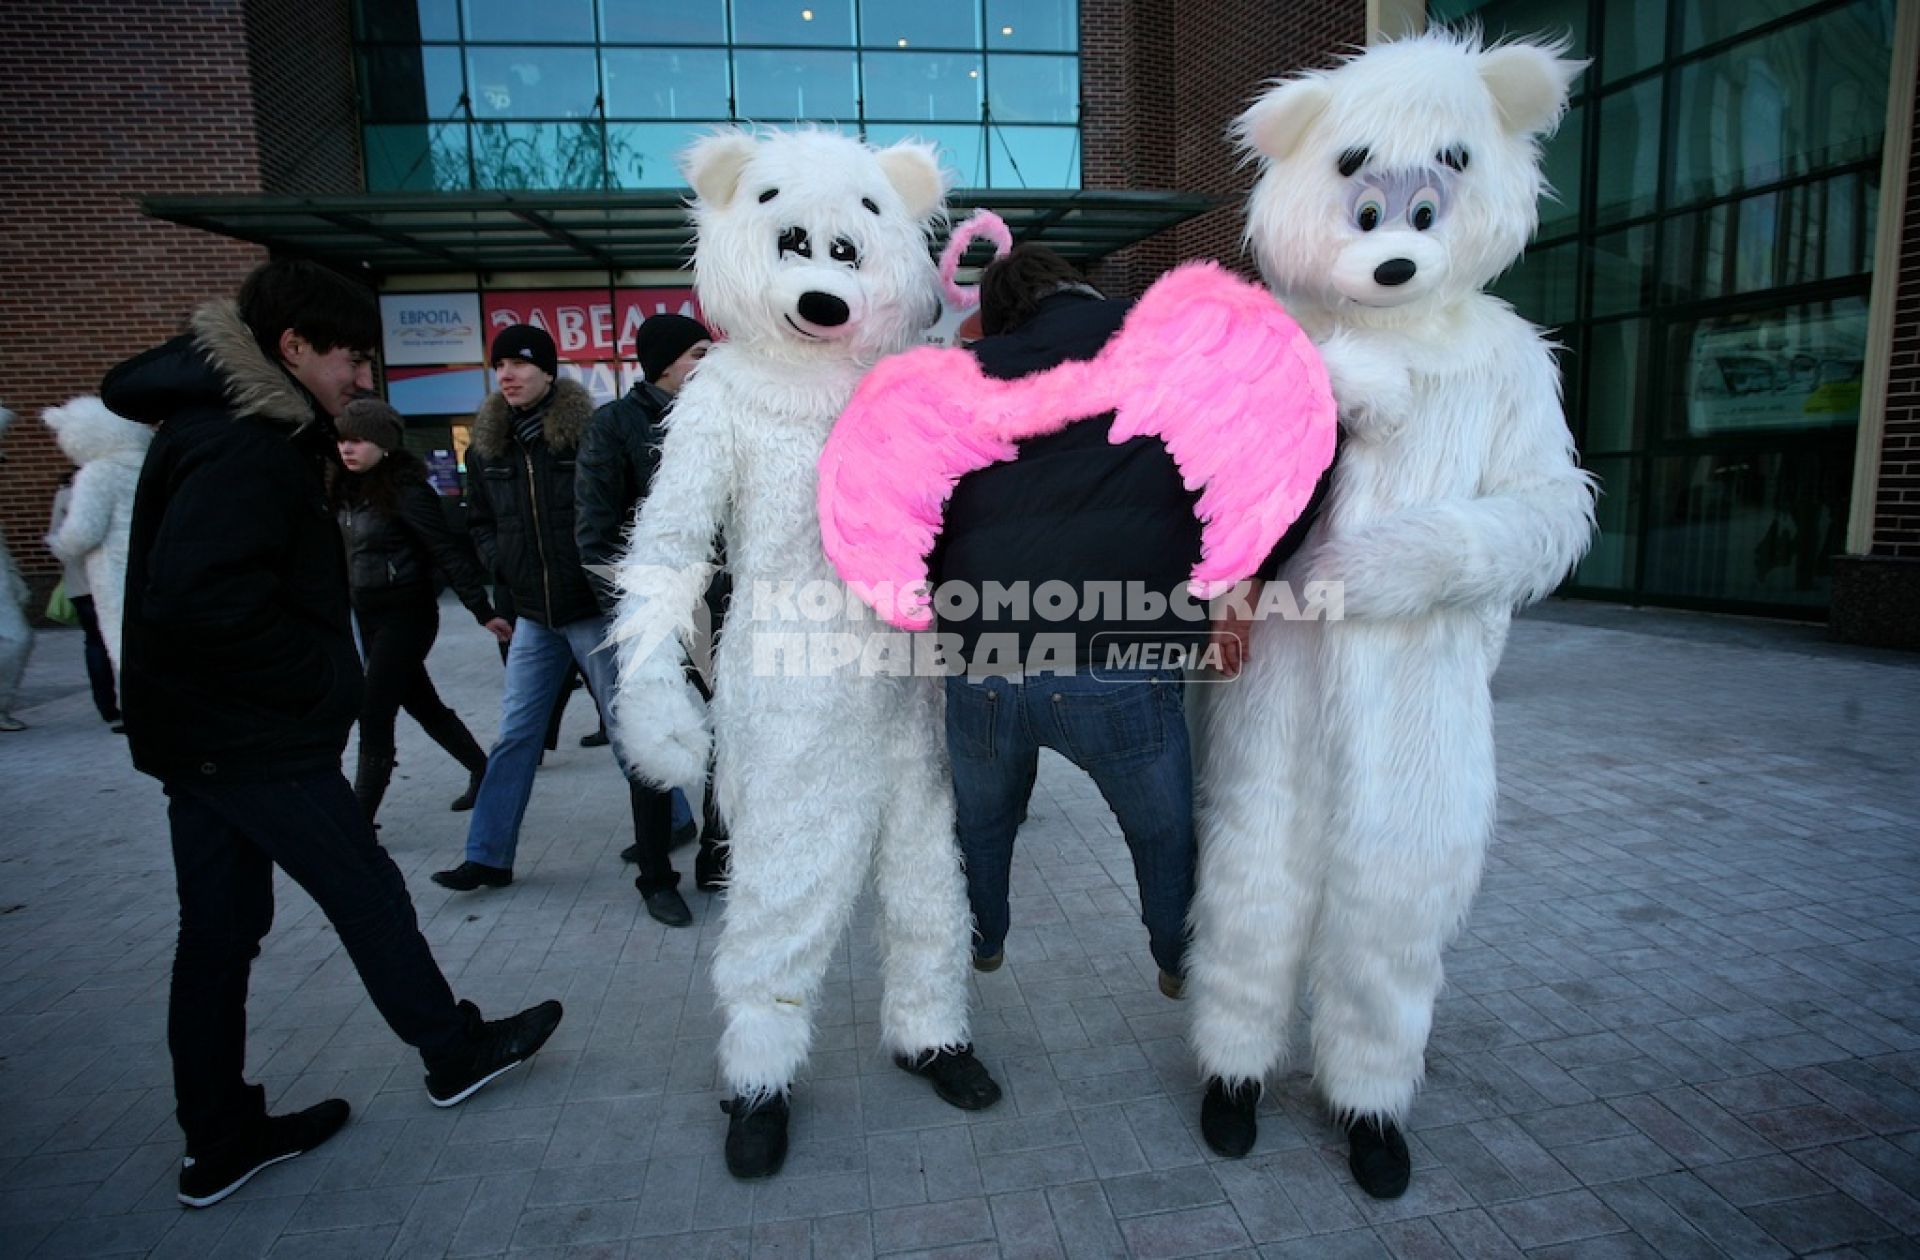 Двое в костюме белых медведей держат под руки мужчину с приклеенными розовыми крыльями на спине.